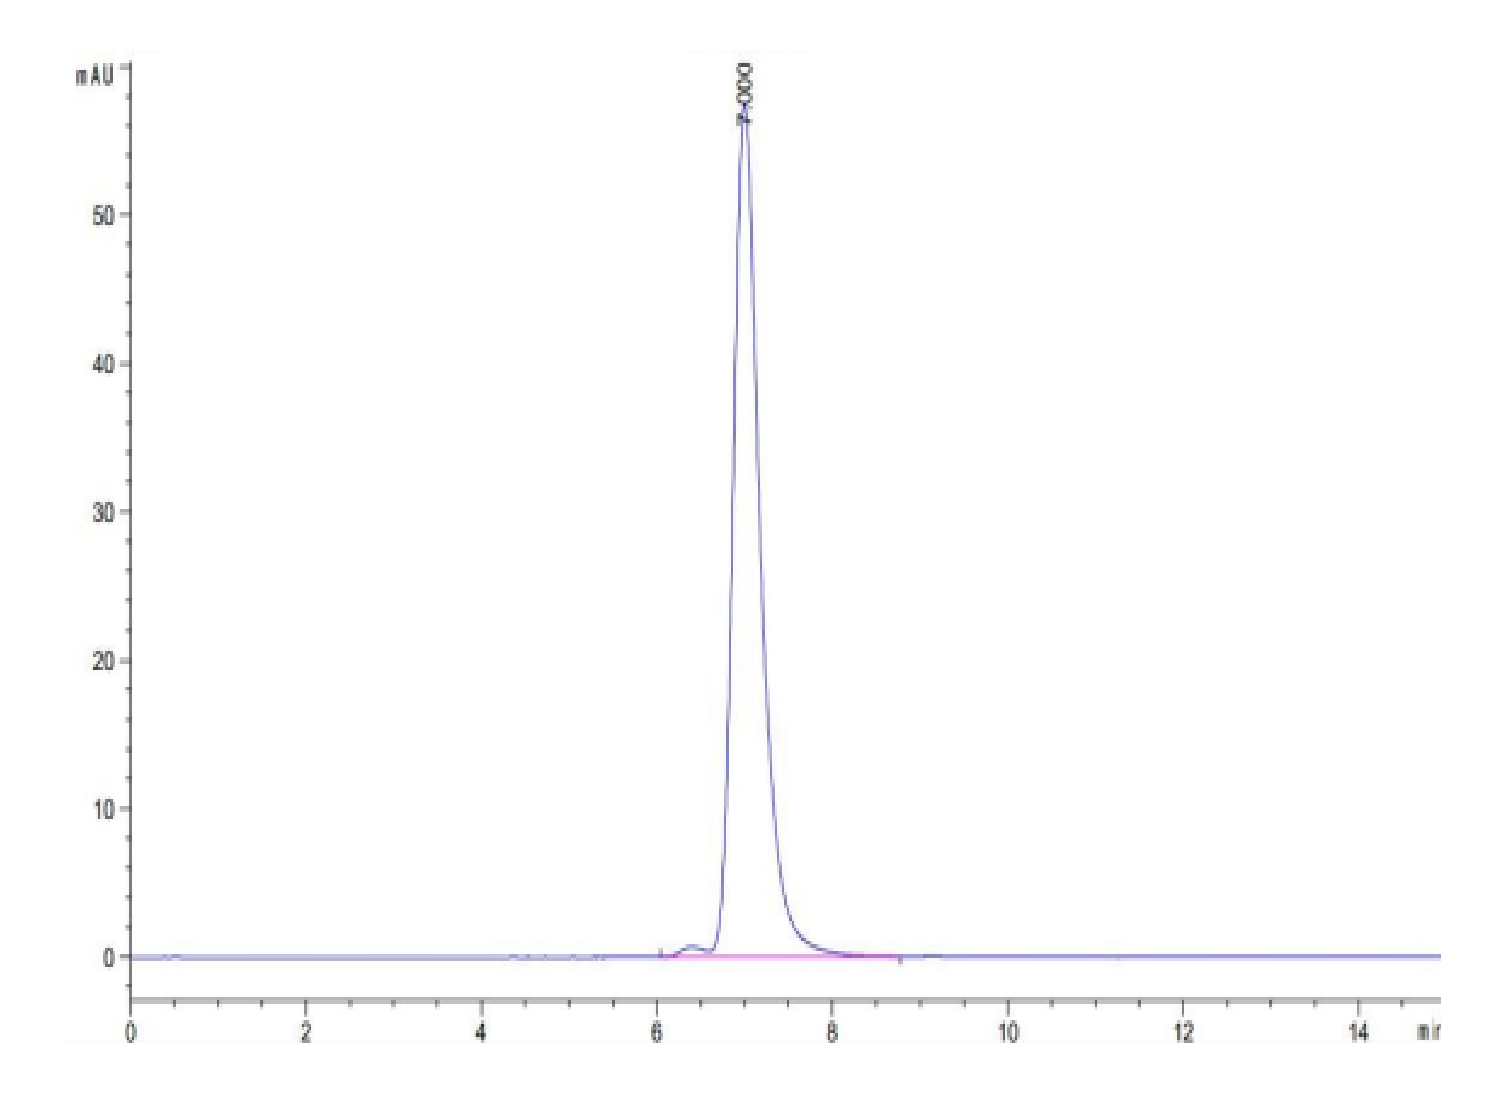 Human MART-1 (HLA-A*02:01) Tetramer Protein (LTP10027)